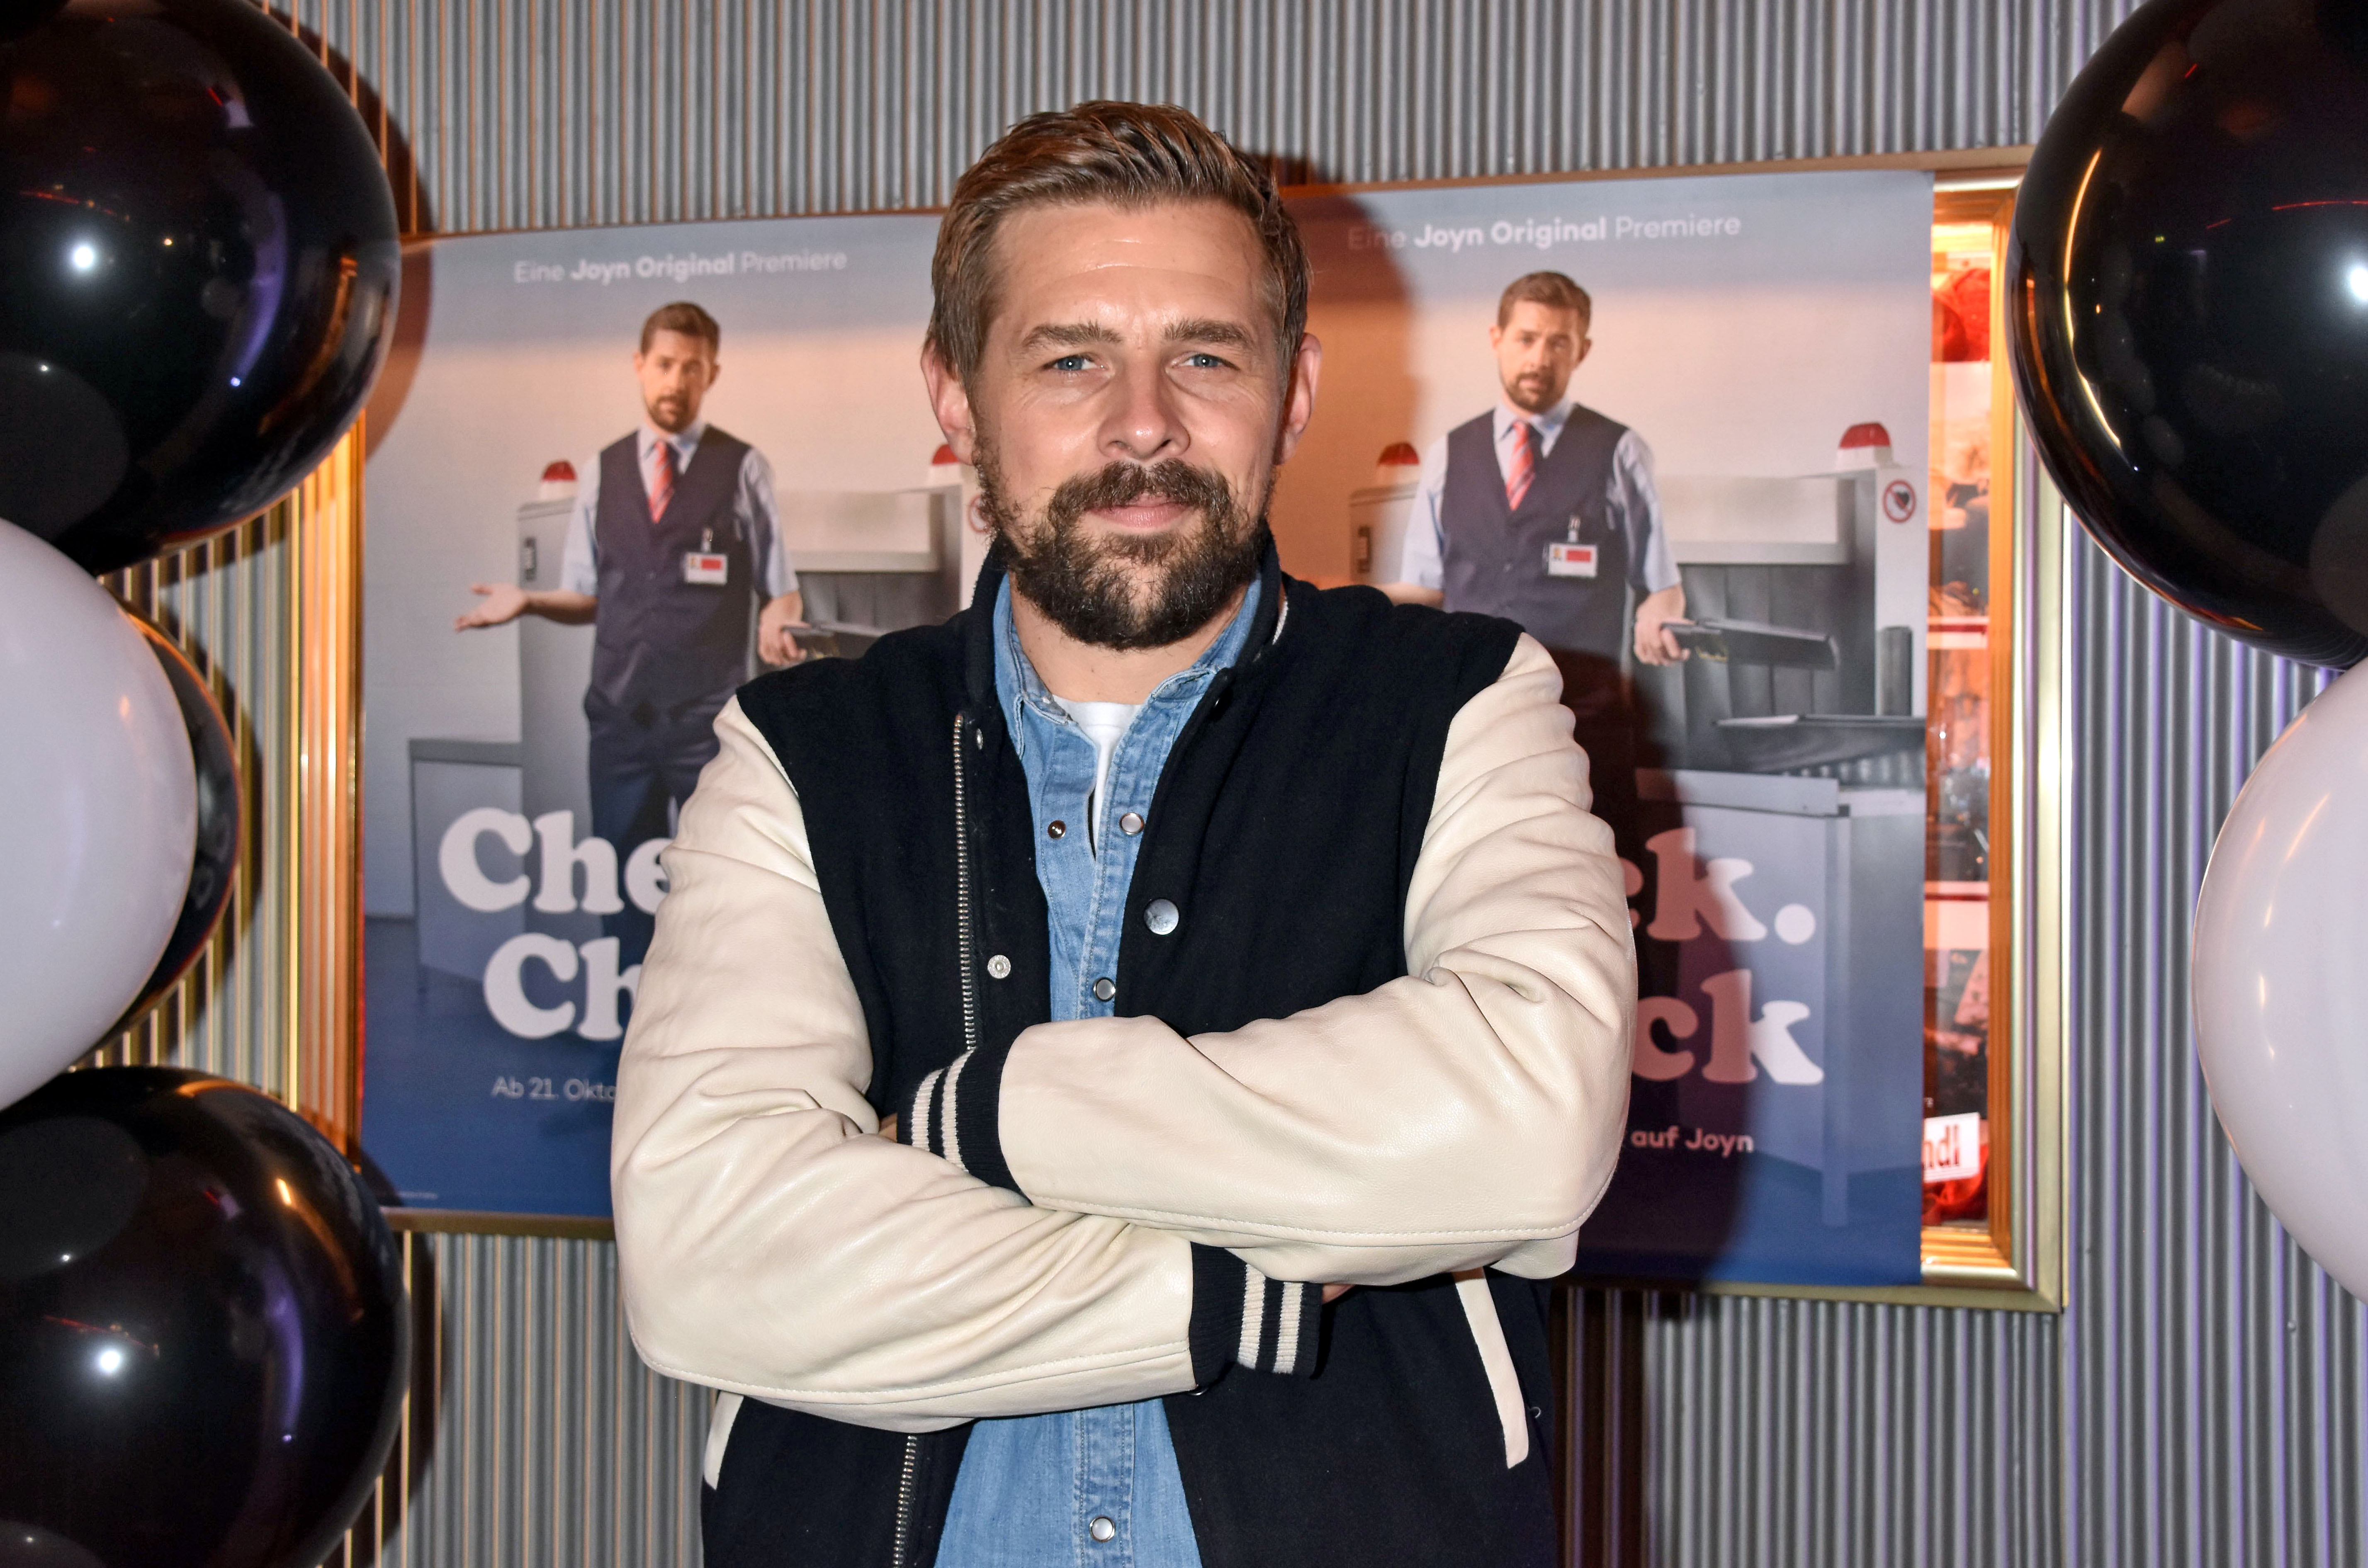 Klaas Heufer-Umlauf bei der "Check Check"-Premiere in Astor Film Lounge, Oktober 2019 in Berlin,